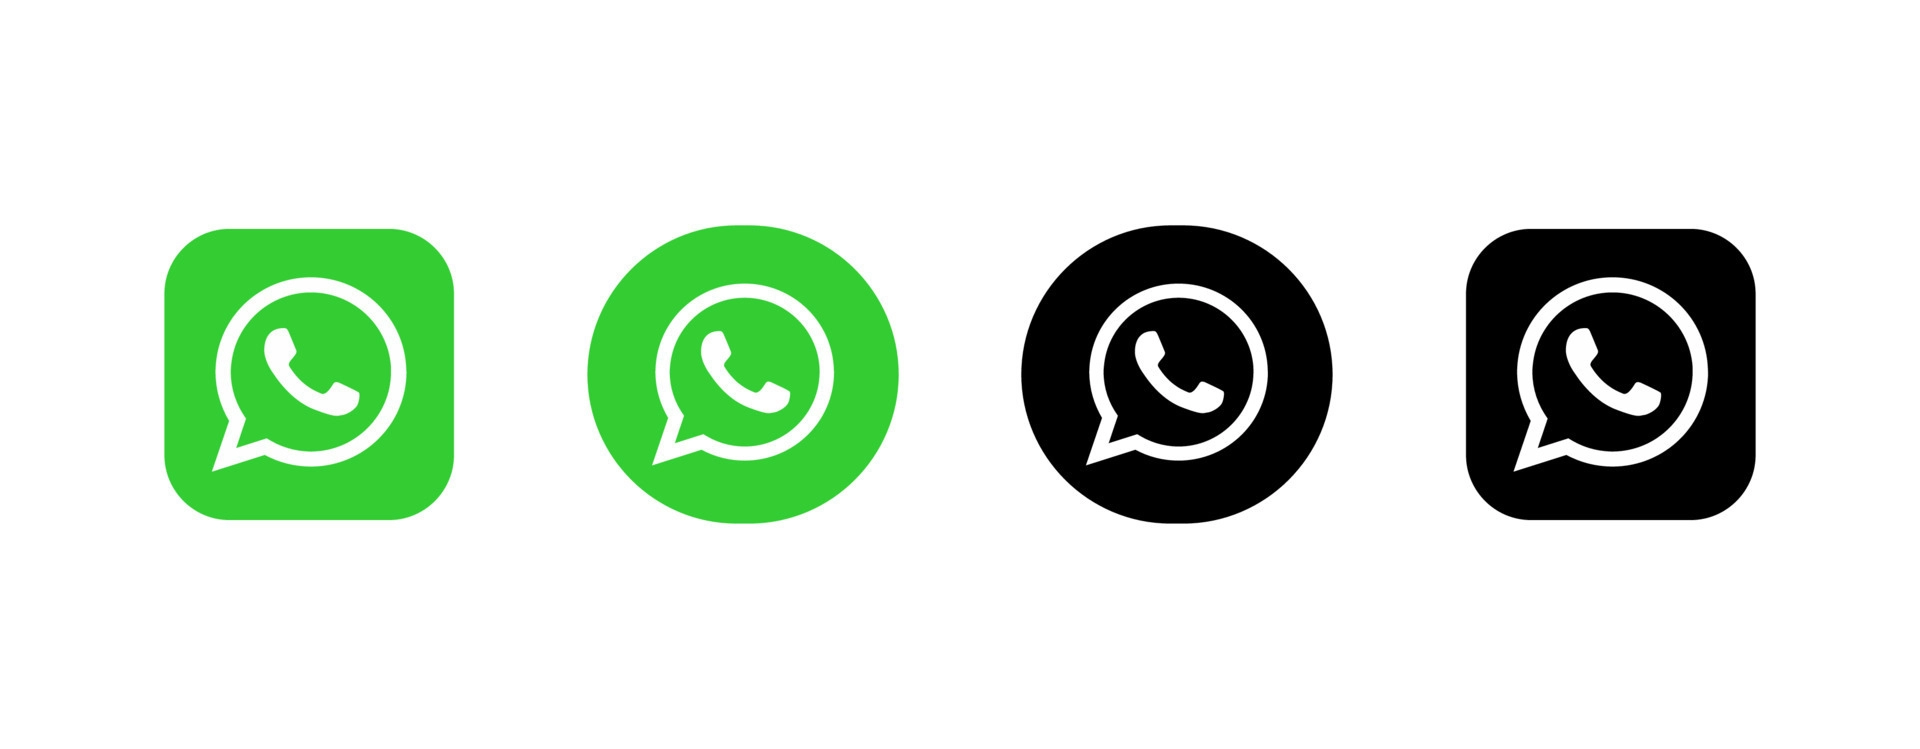 孟加拉国whatsapp营销人员使用whatsapp筛号有何用户？